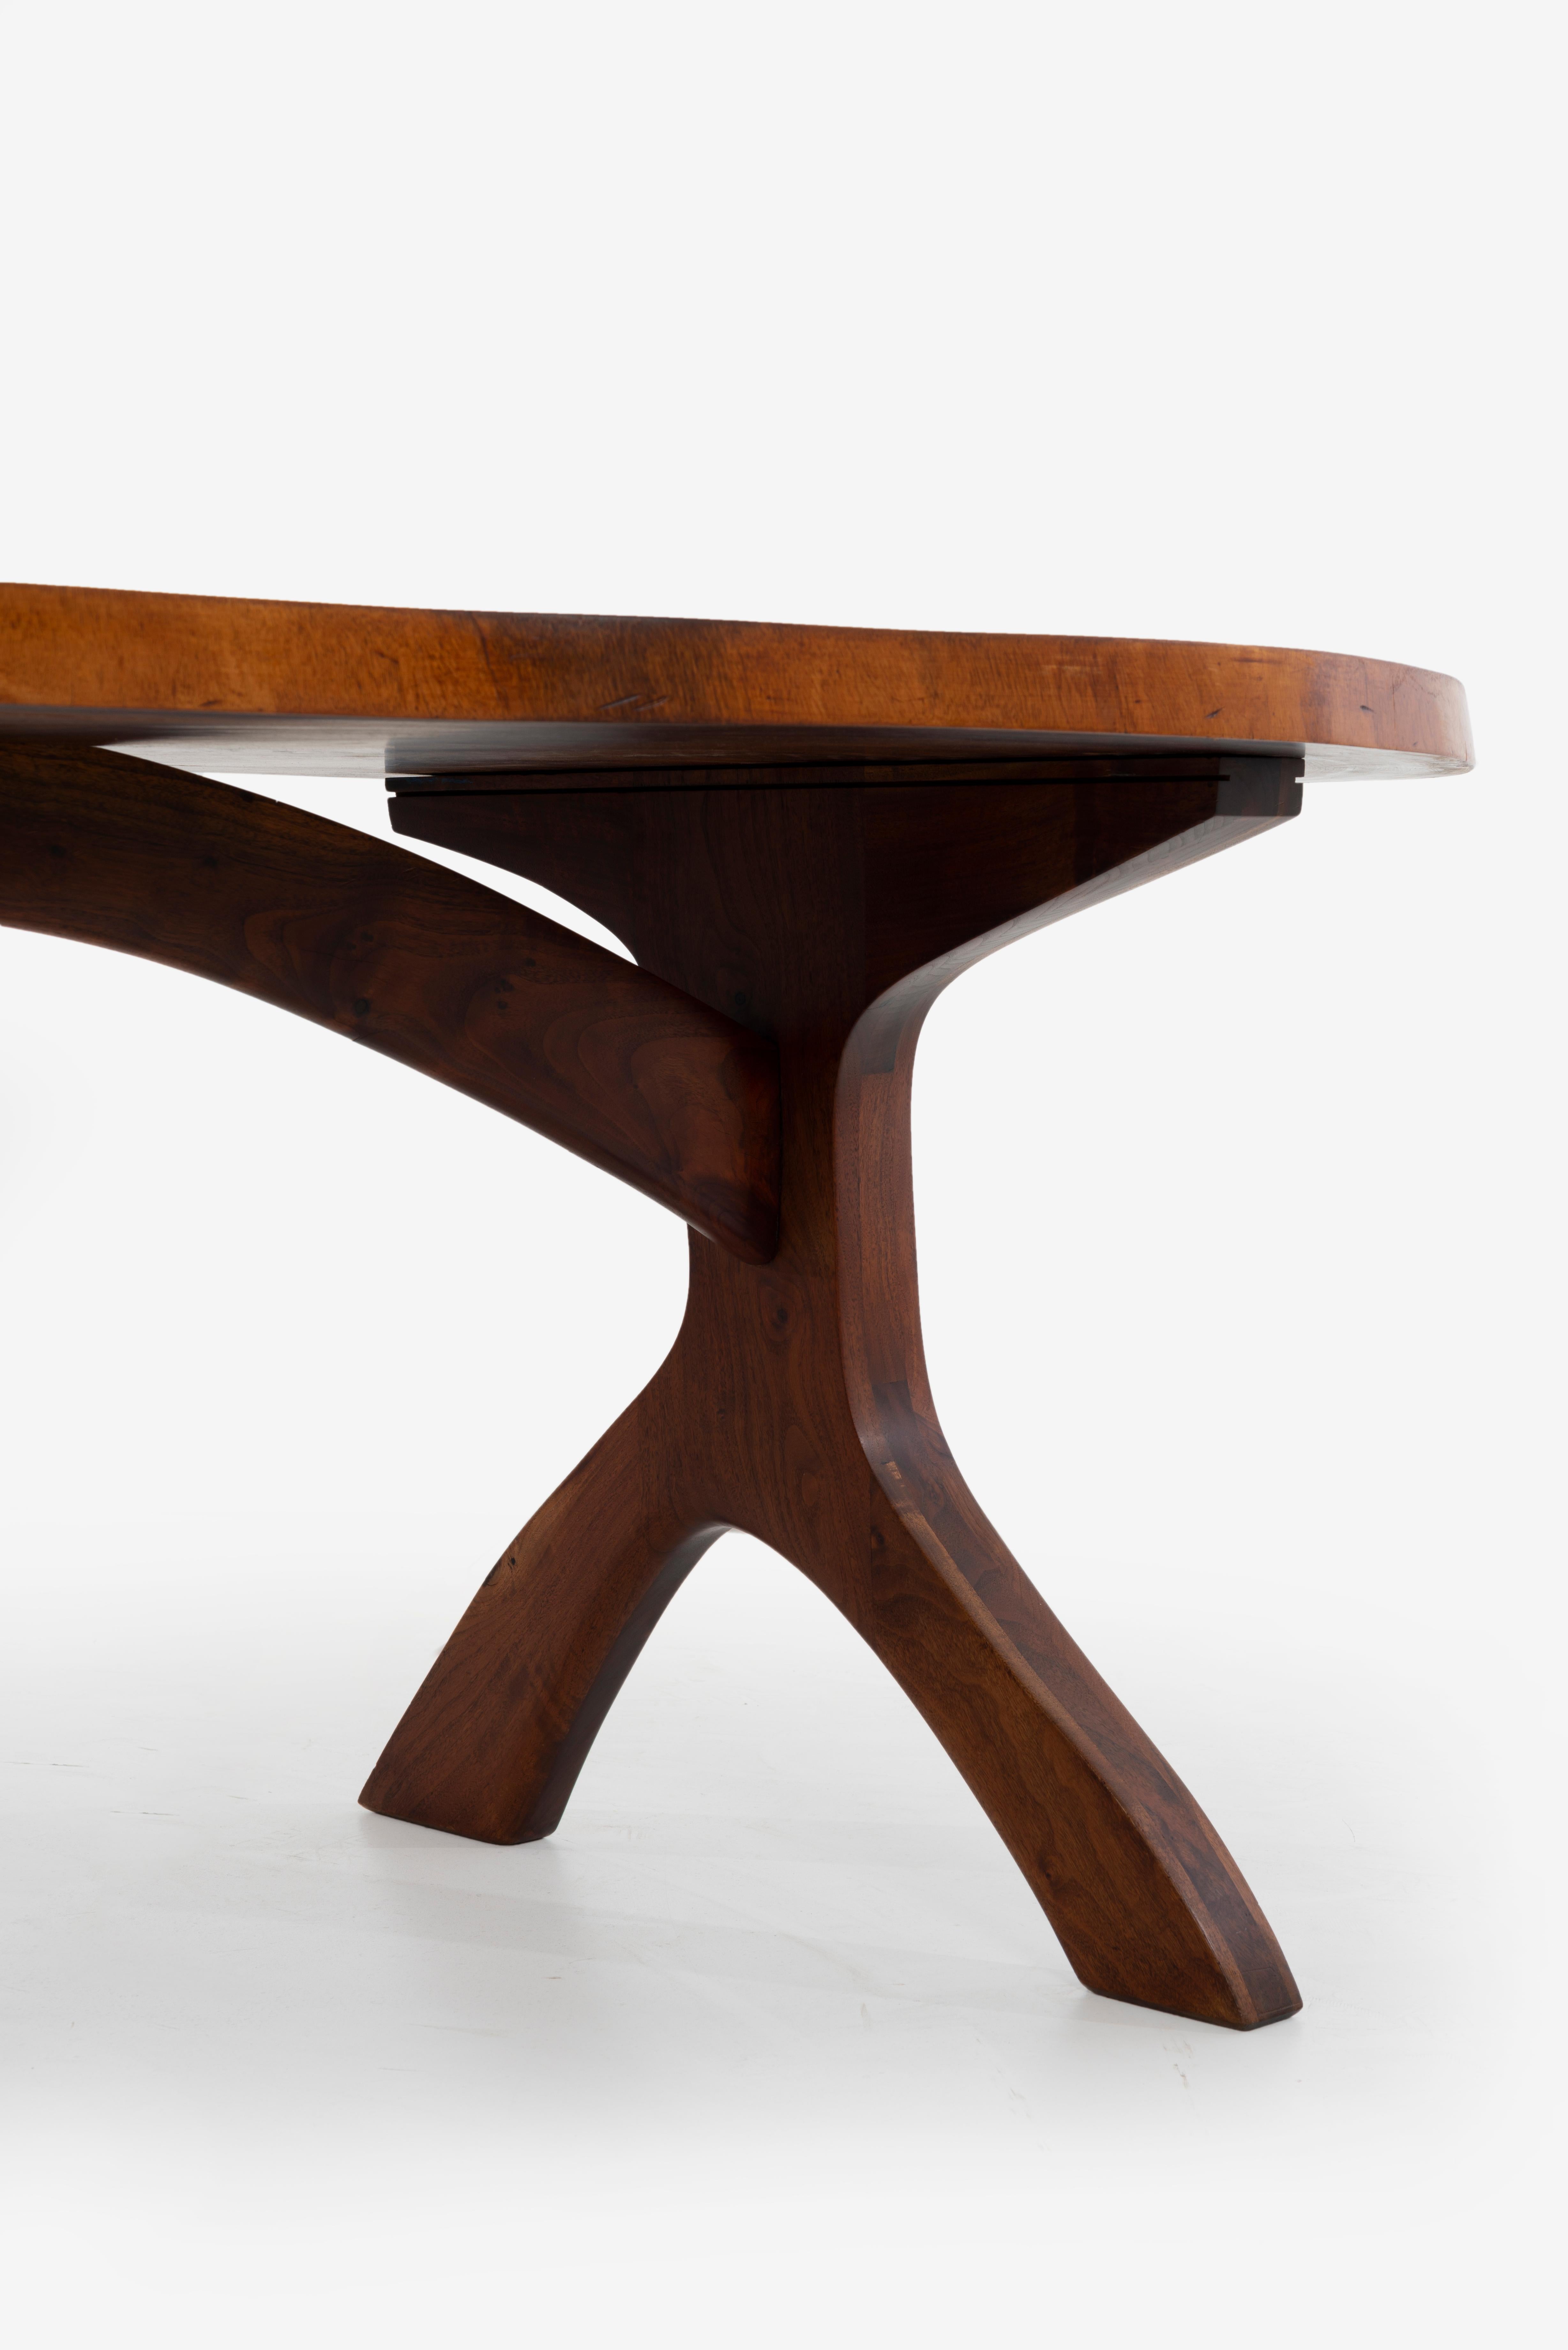 Arthur Espenet Carpenter, Unique Double-Trunk Table Desk For Sale 4